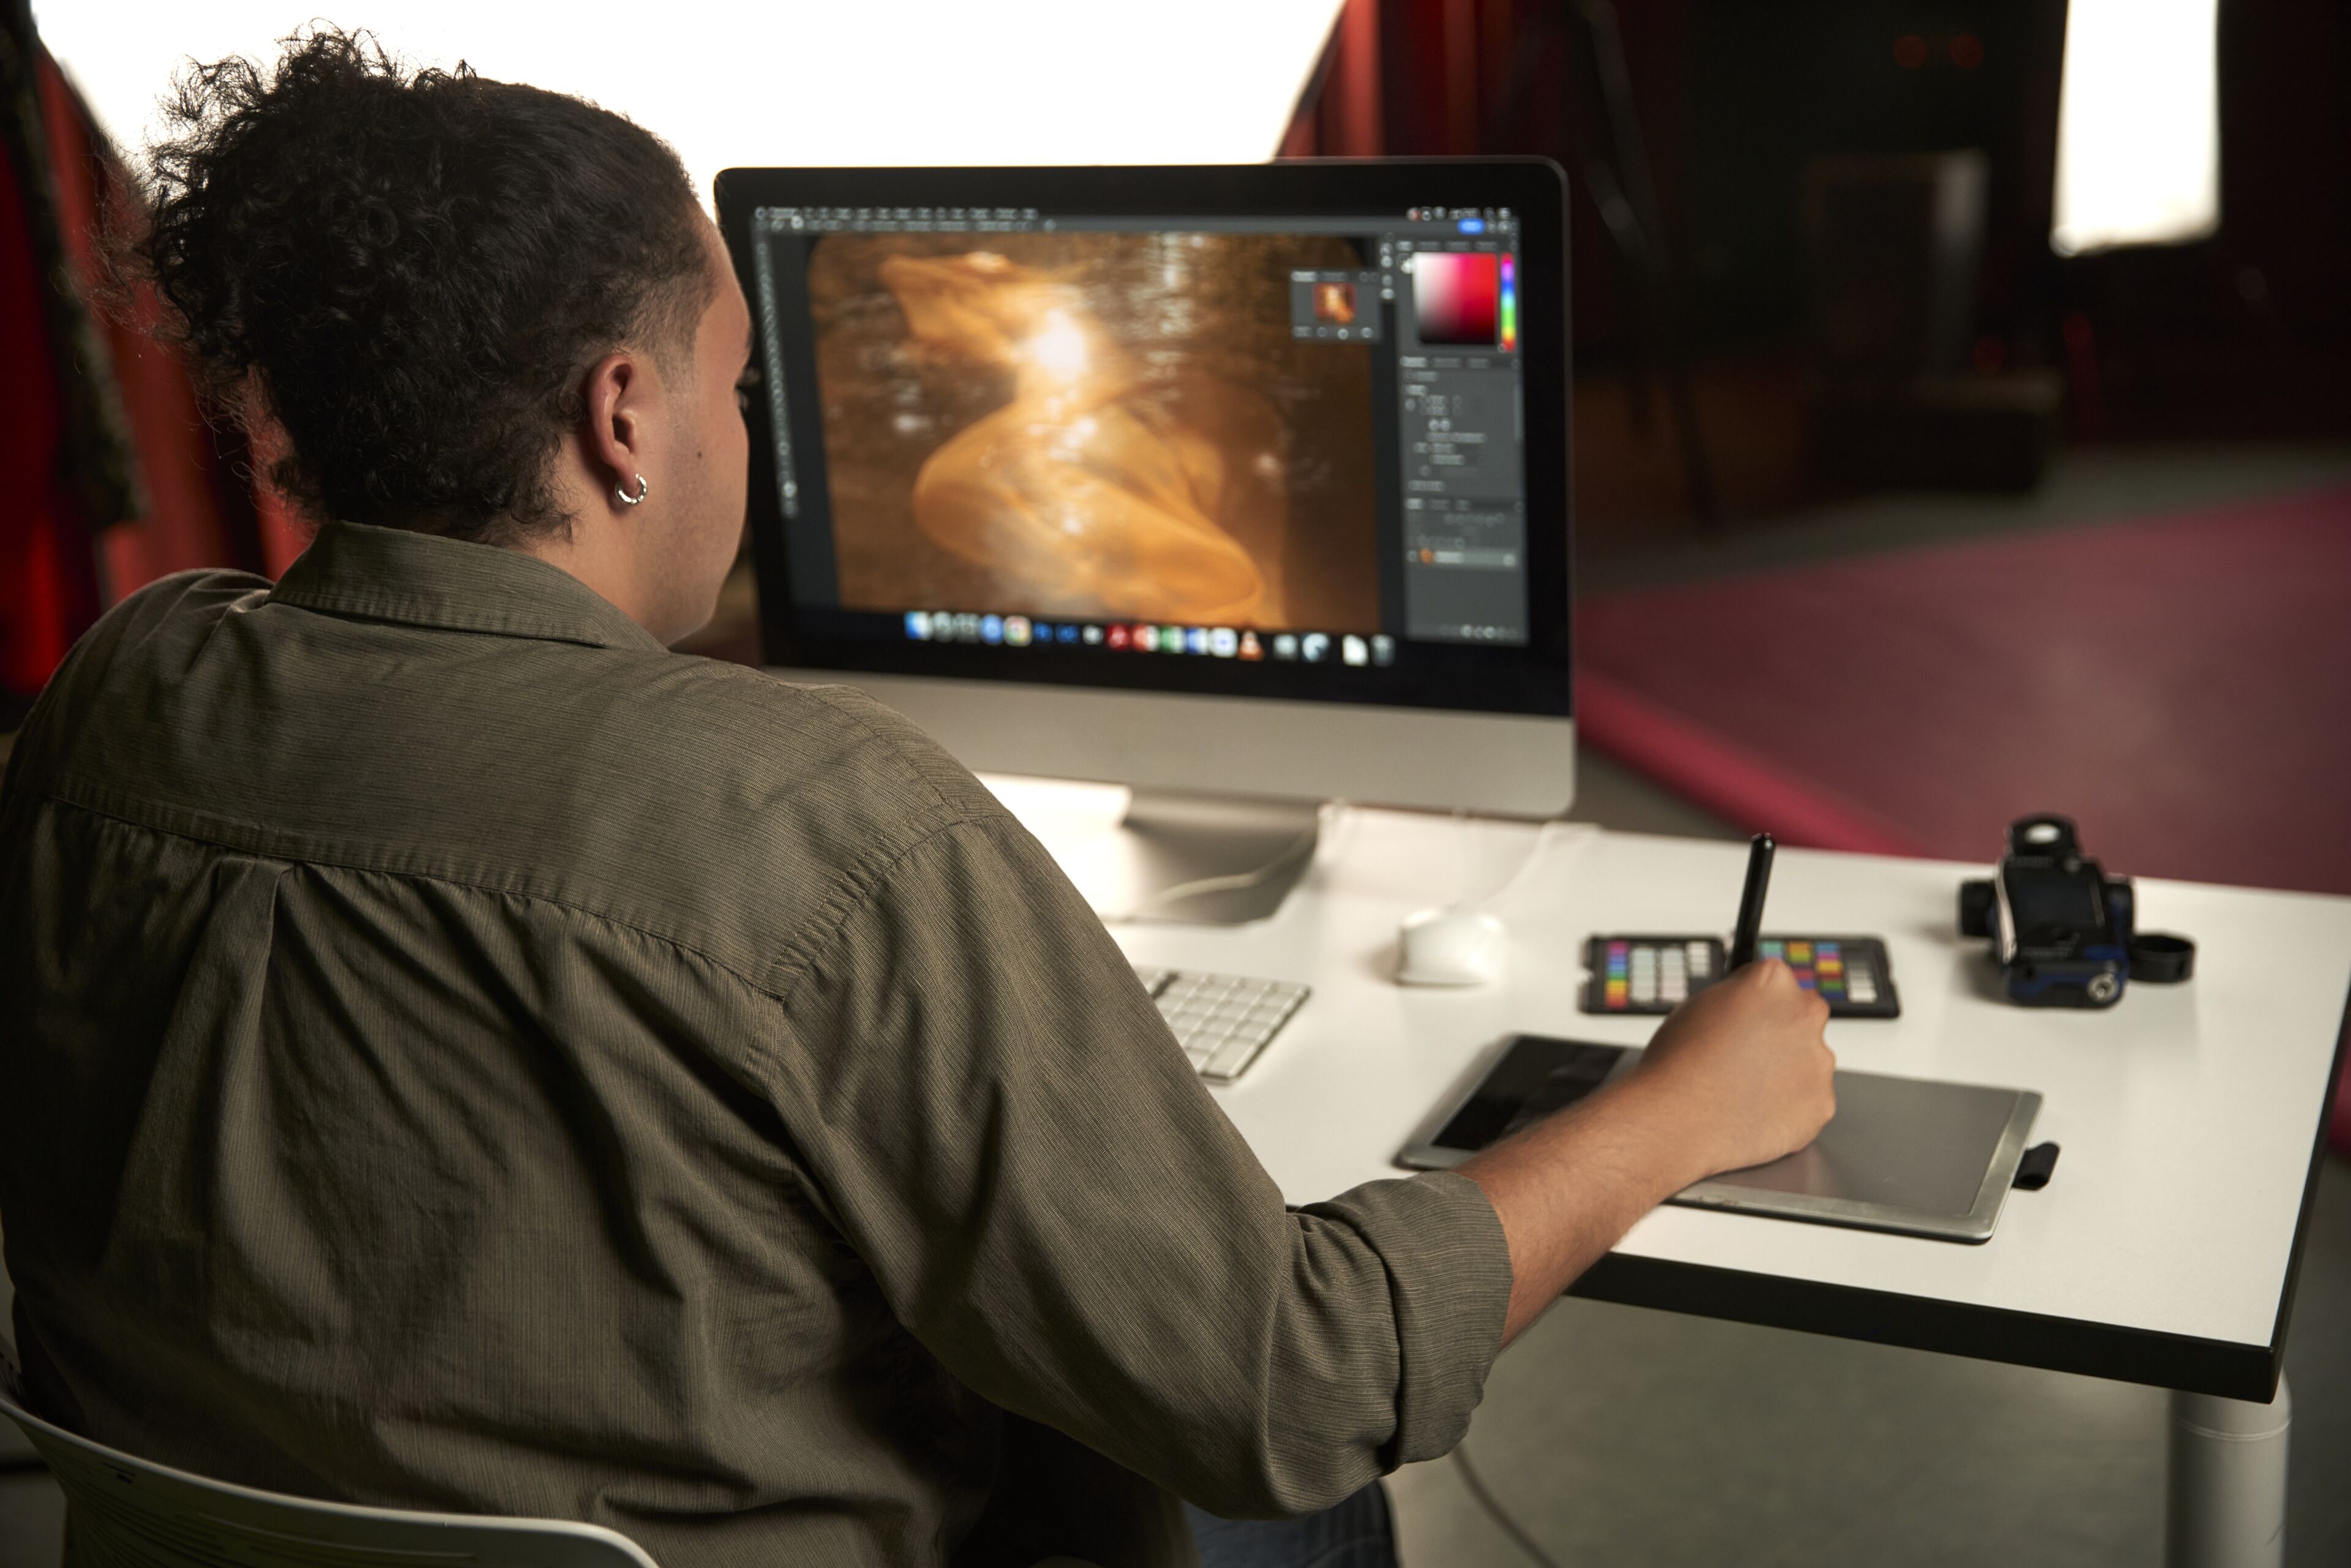 Un diseñador gráfico está concentrado en editar una imagen en un ordenador, con una tableta gráfica y muestras de color en el escritorio.